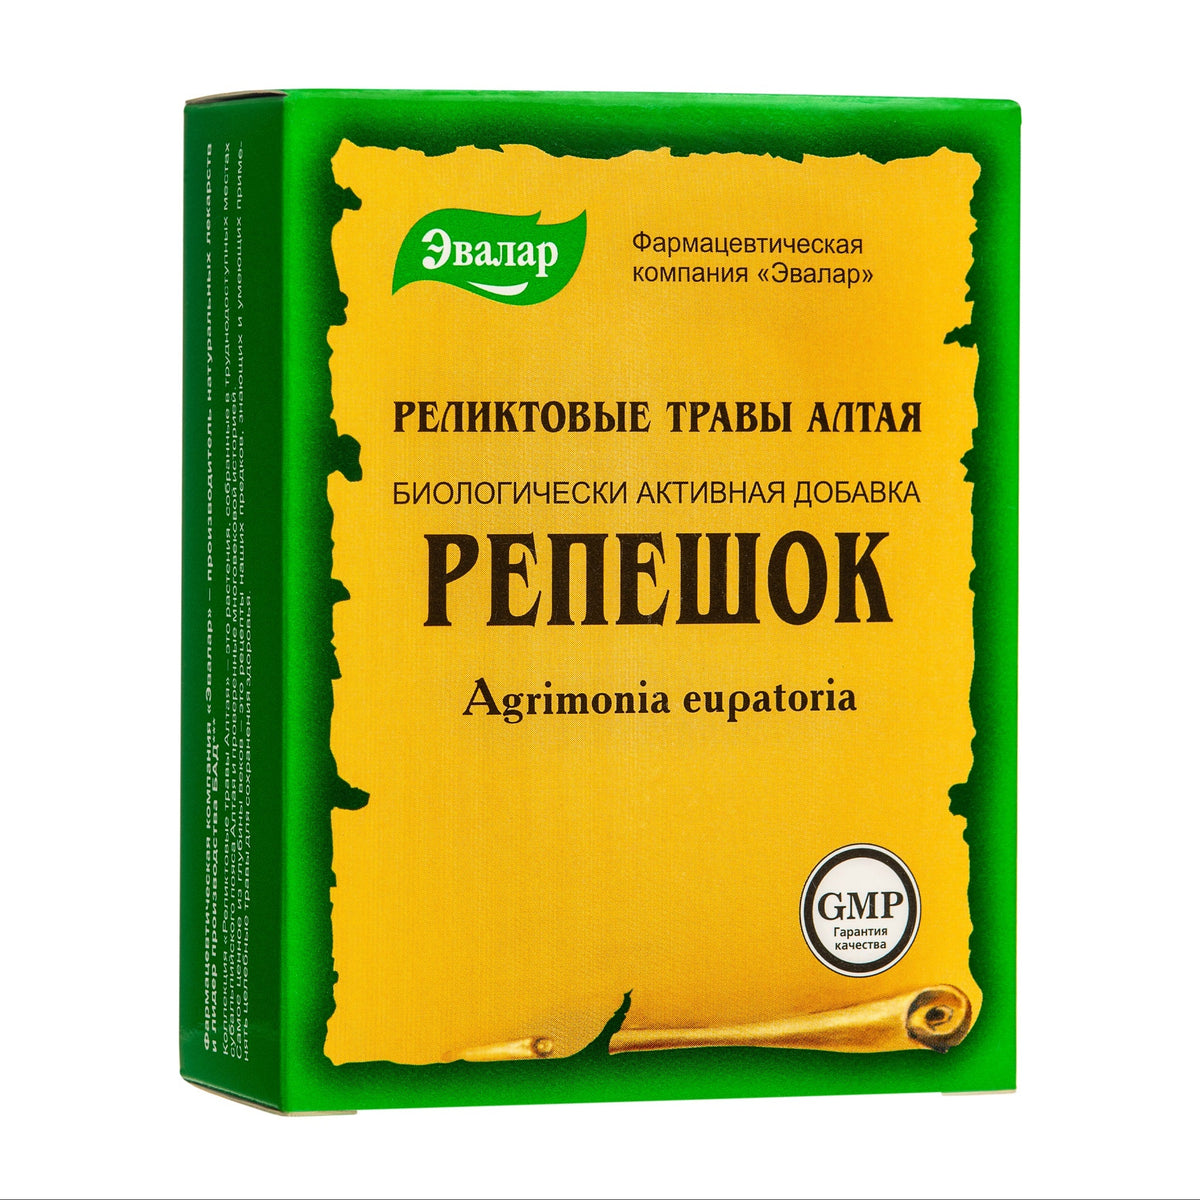 Thé aigremoine coupé et tamisé par Evalar Altai Sibérie Agrimonia Eupatoria Relic Herb 50g